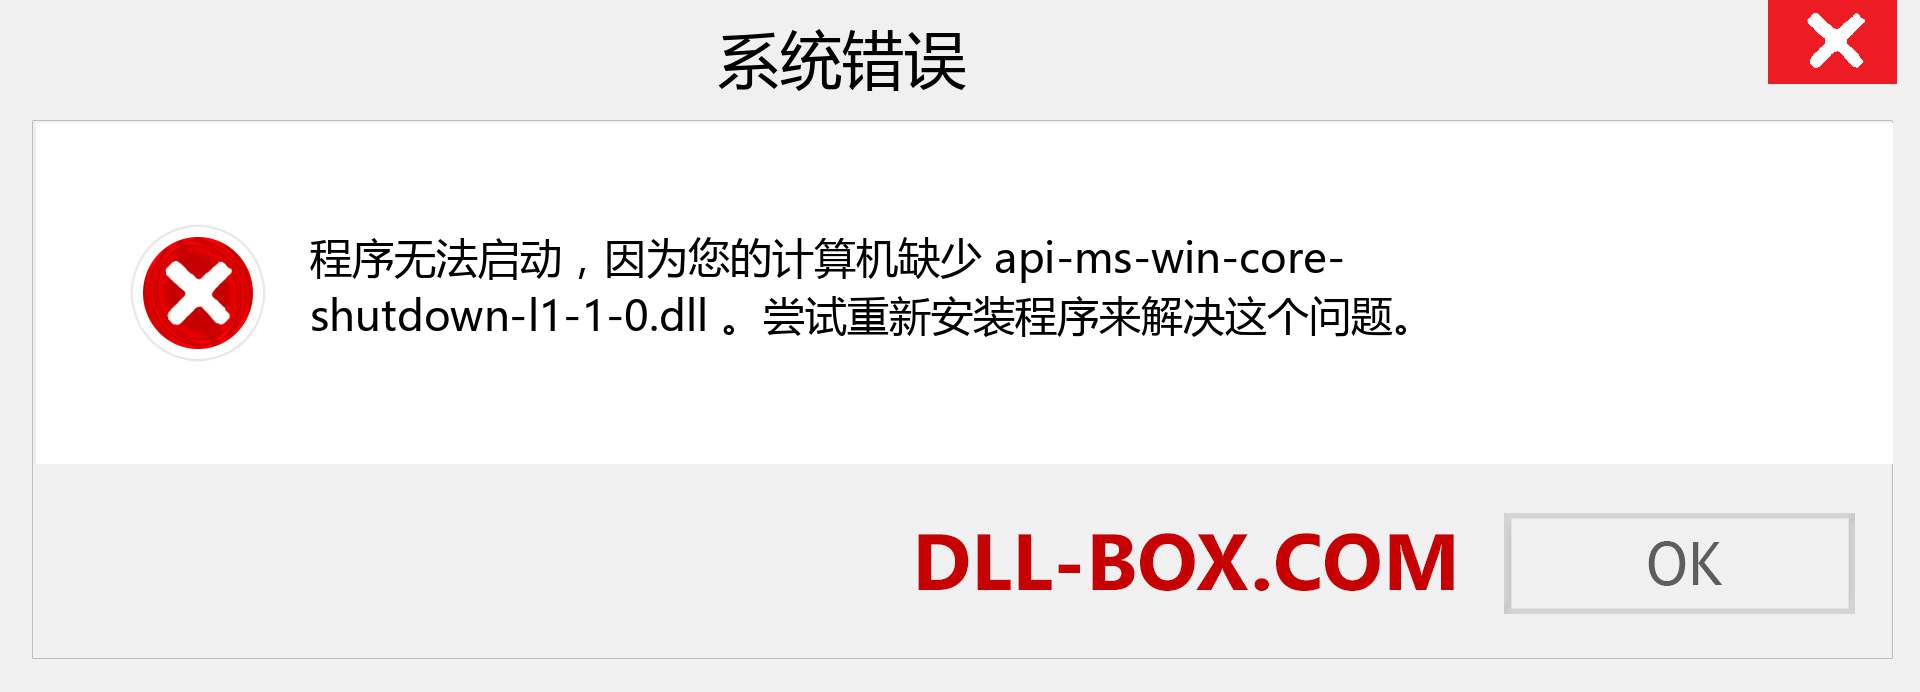 api-ms-win-core-shutdown-l1-1-0.dll 文件丢失？。 适用于 Windows 7、8、10 的下载 - 修复 Windows、照片、图像上的 api-ms-win-core-shutdown-l1-1-0 dll 丢失错误